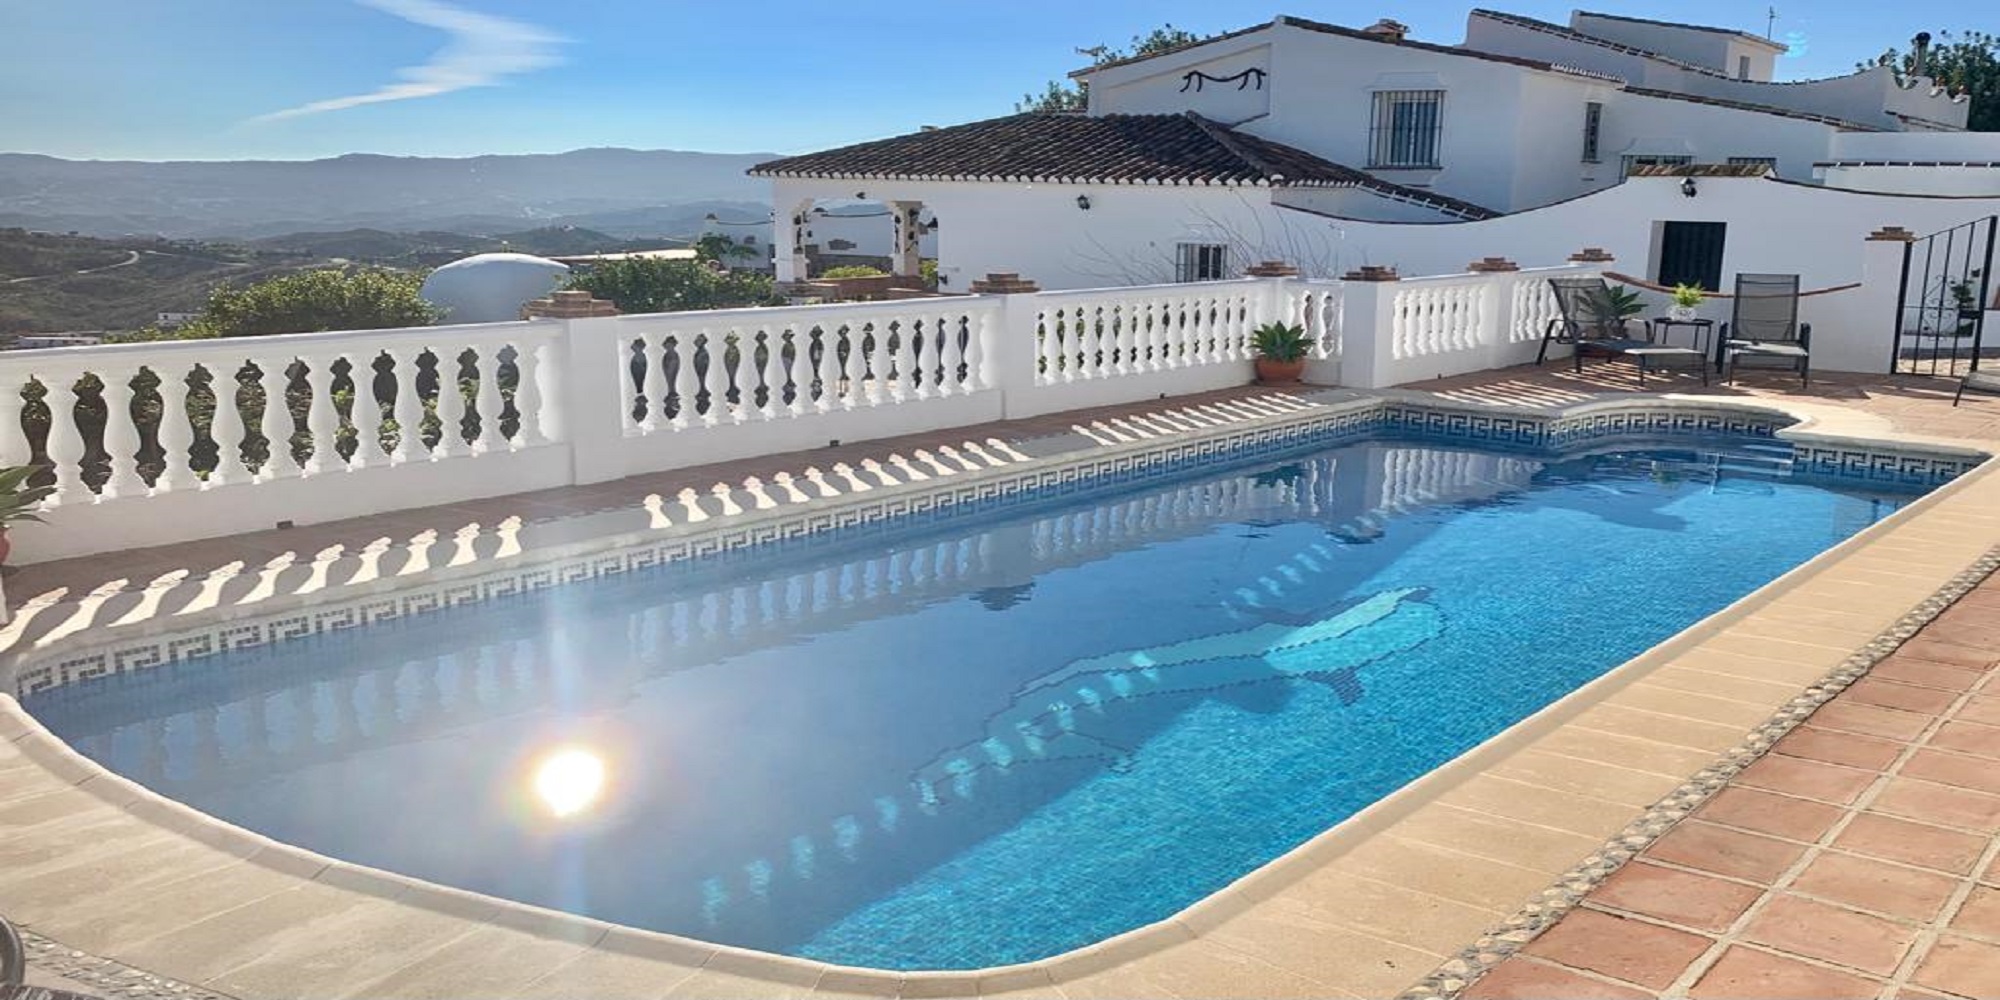 Rustic 4 bedroom villa with pool in Diseminado La Alqueria